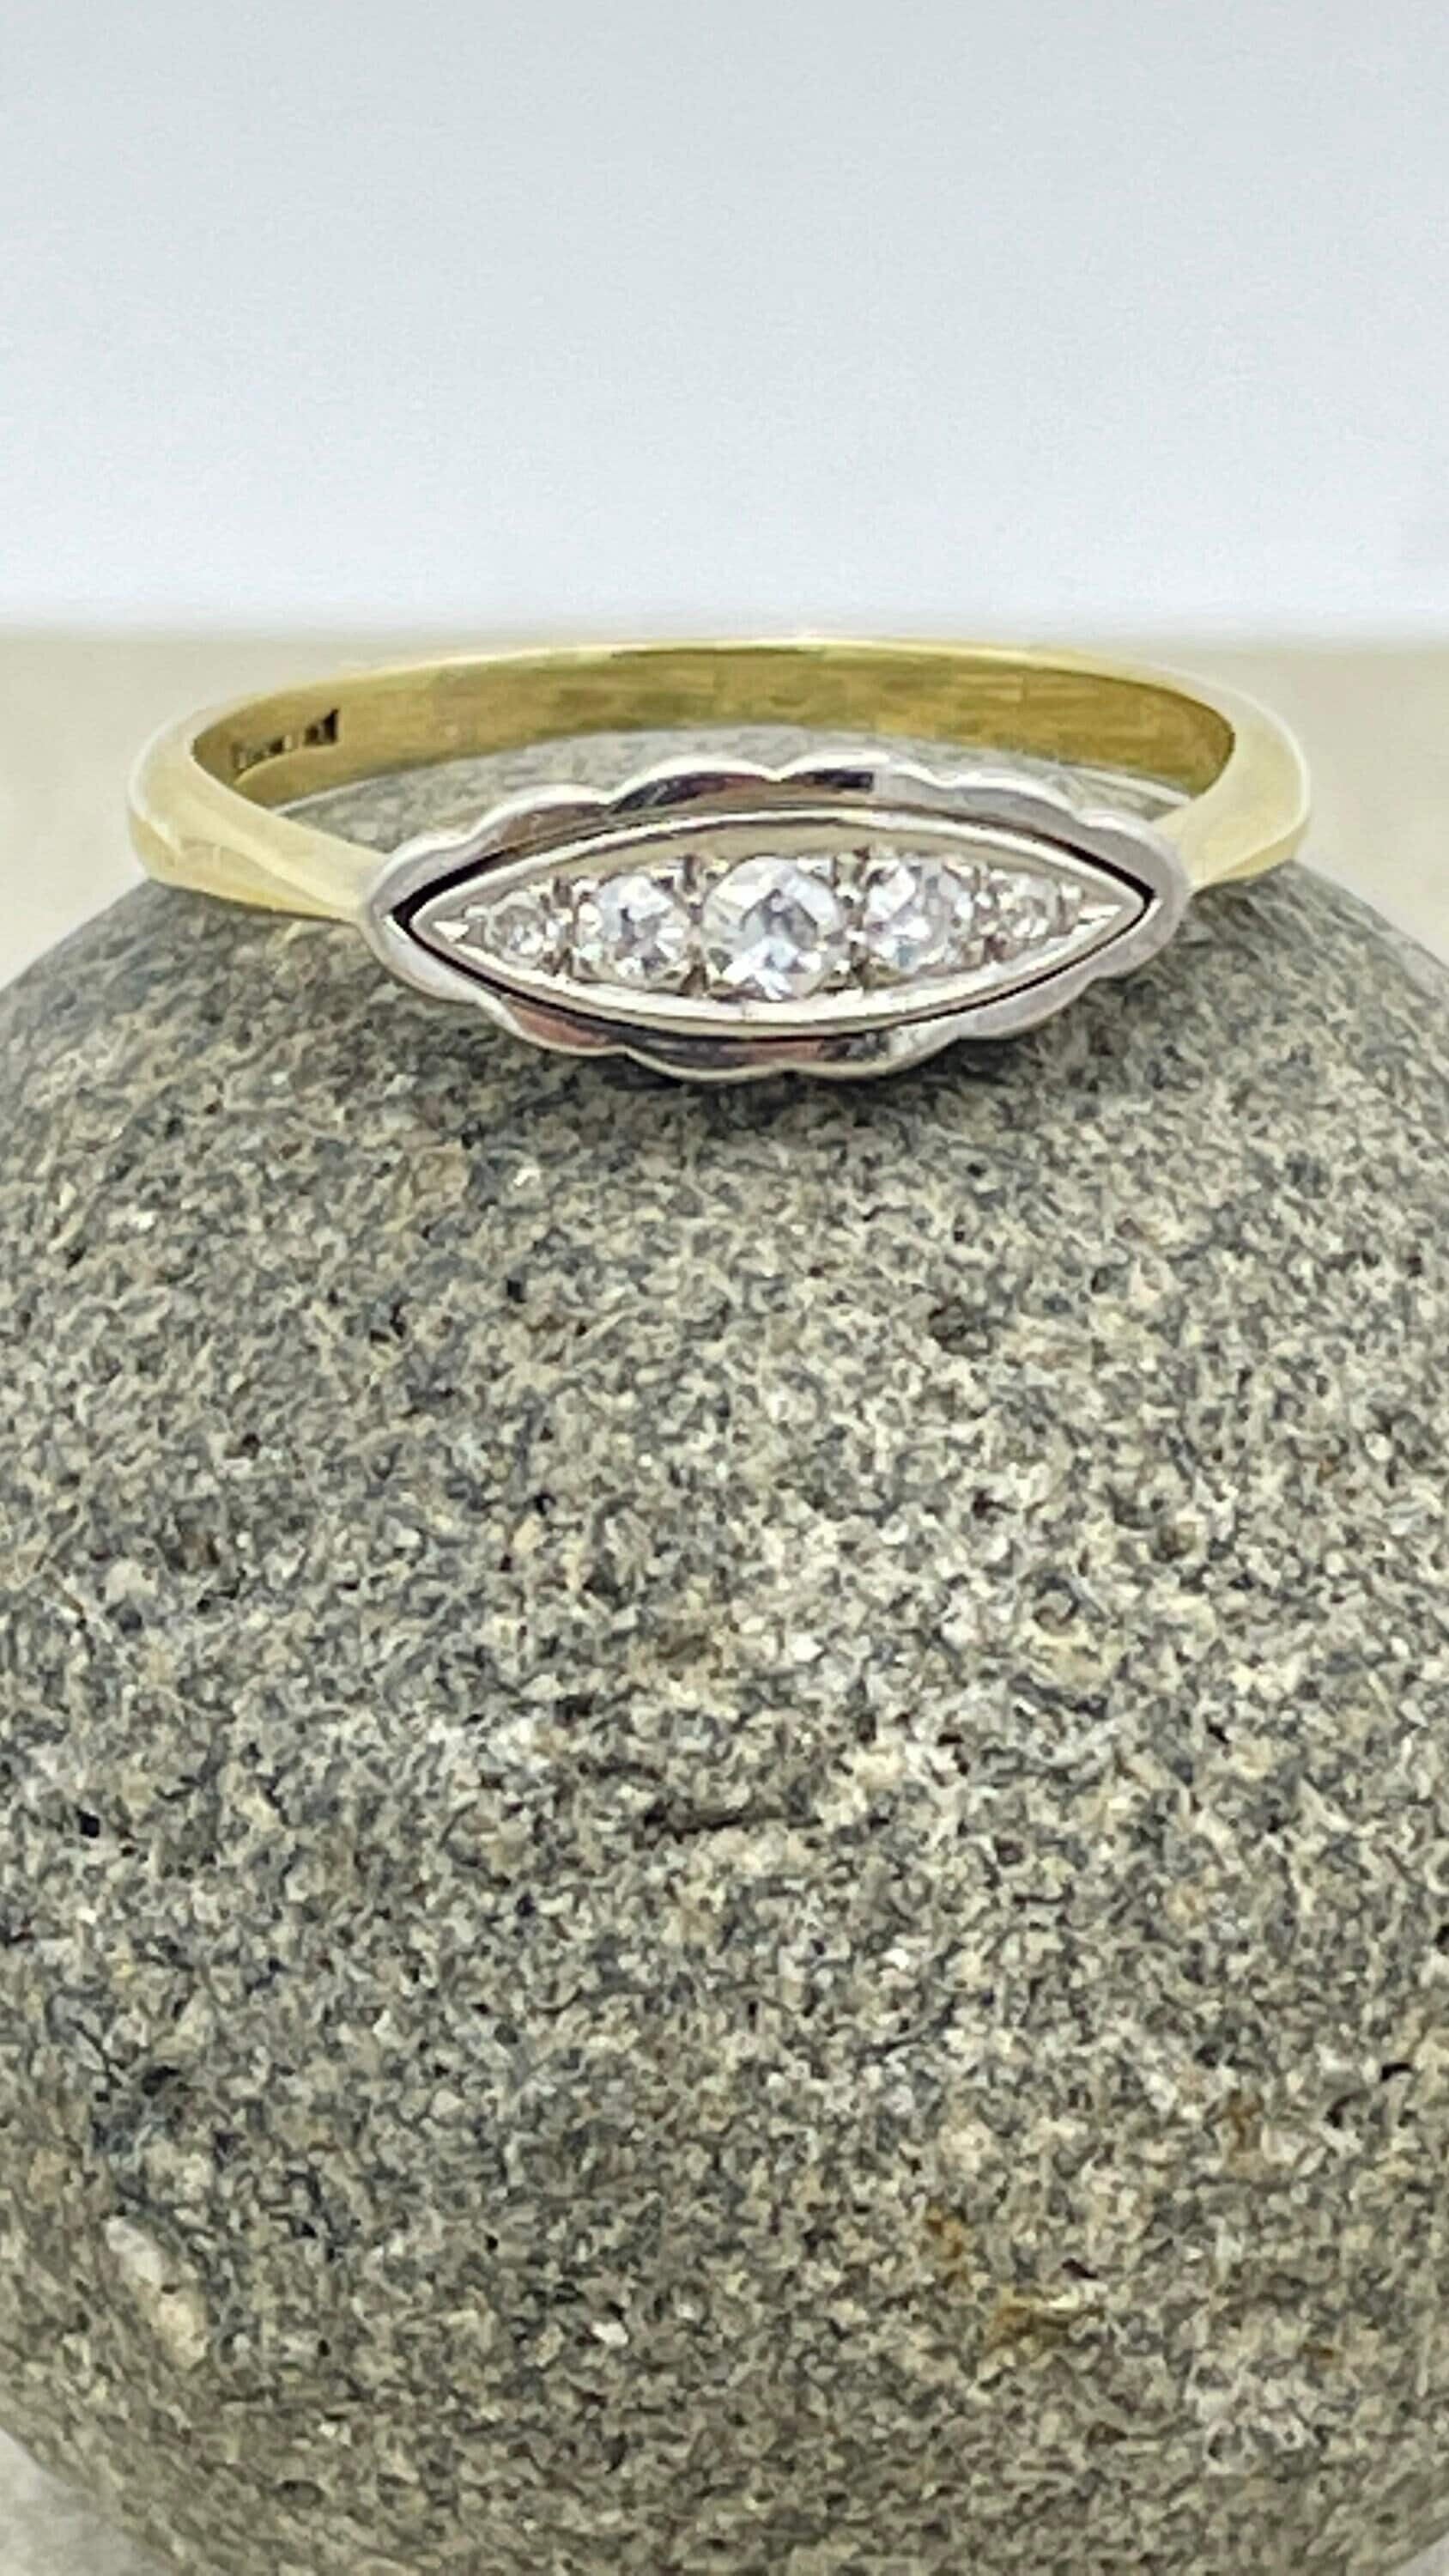 Original art deco vintage 18ct gold & platinum old cut diamond ring, c1920s